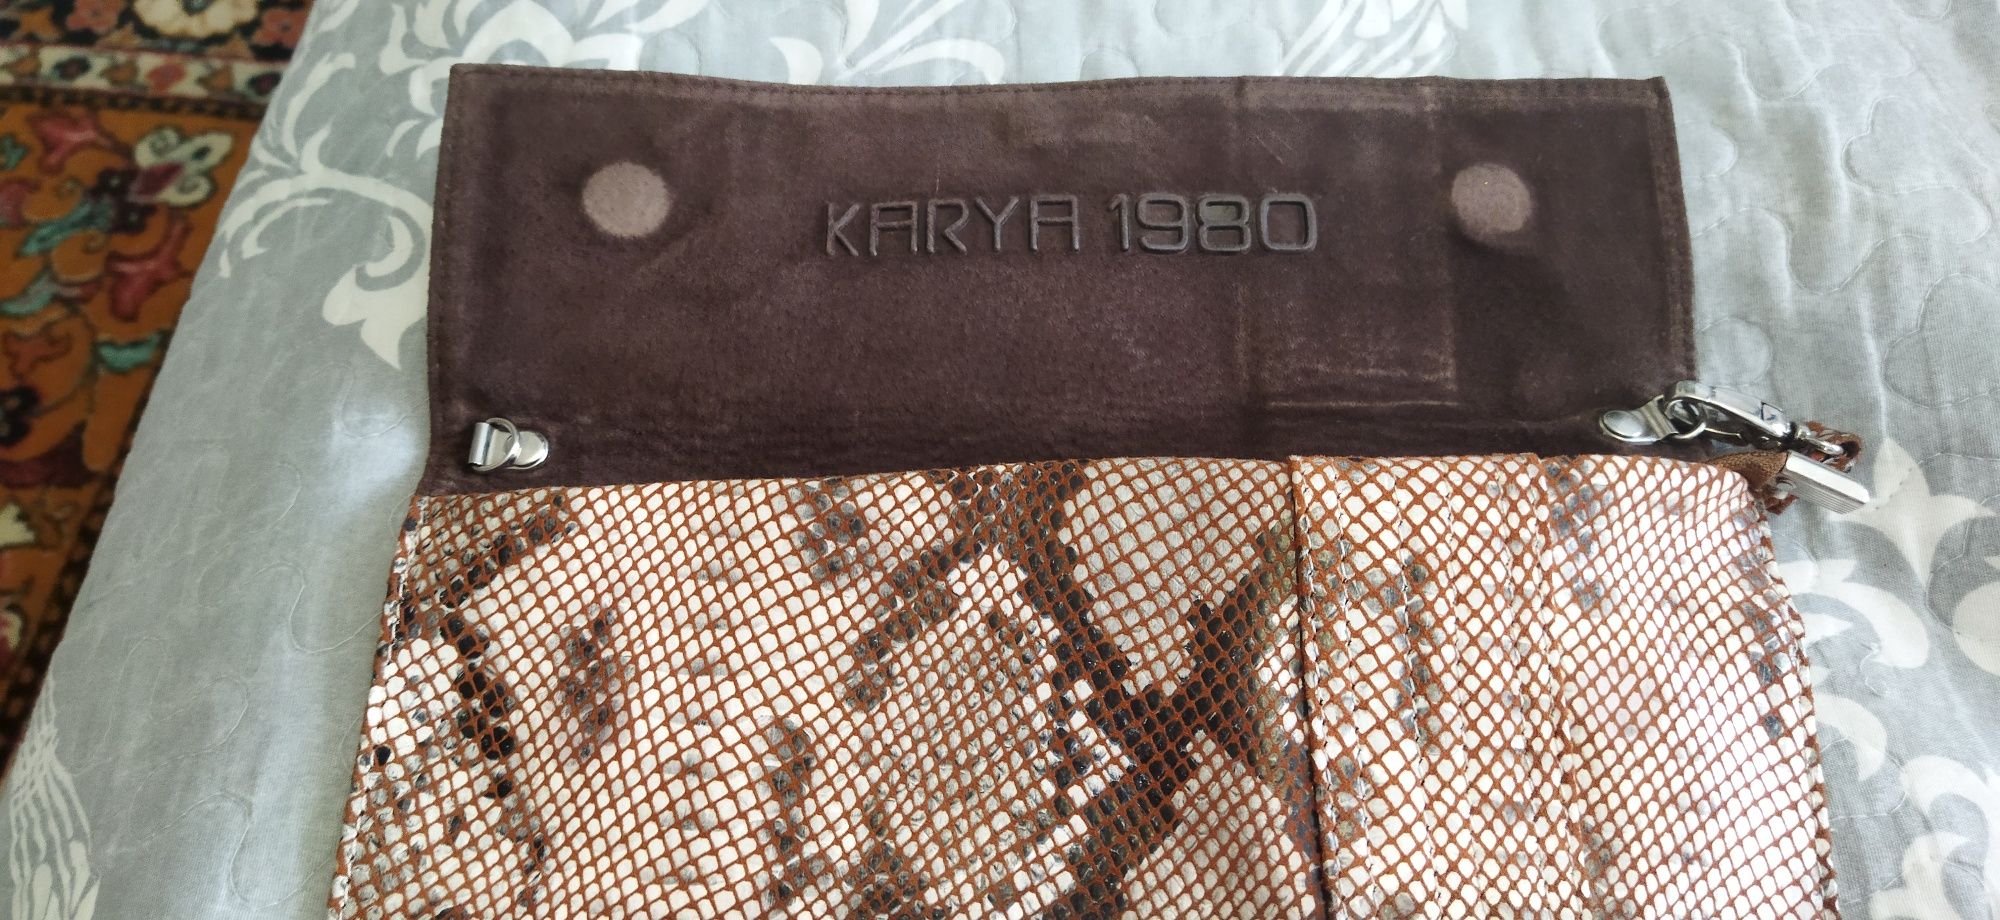 Клатч кожанный сумка кожаная фирма Karya